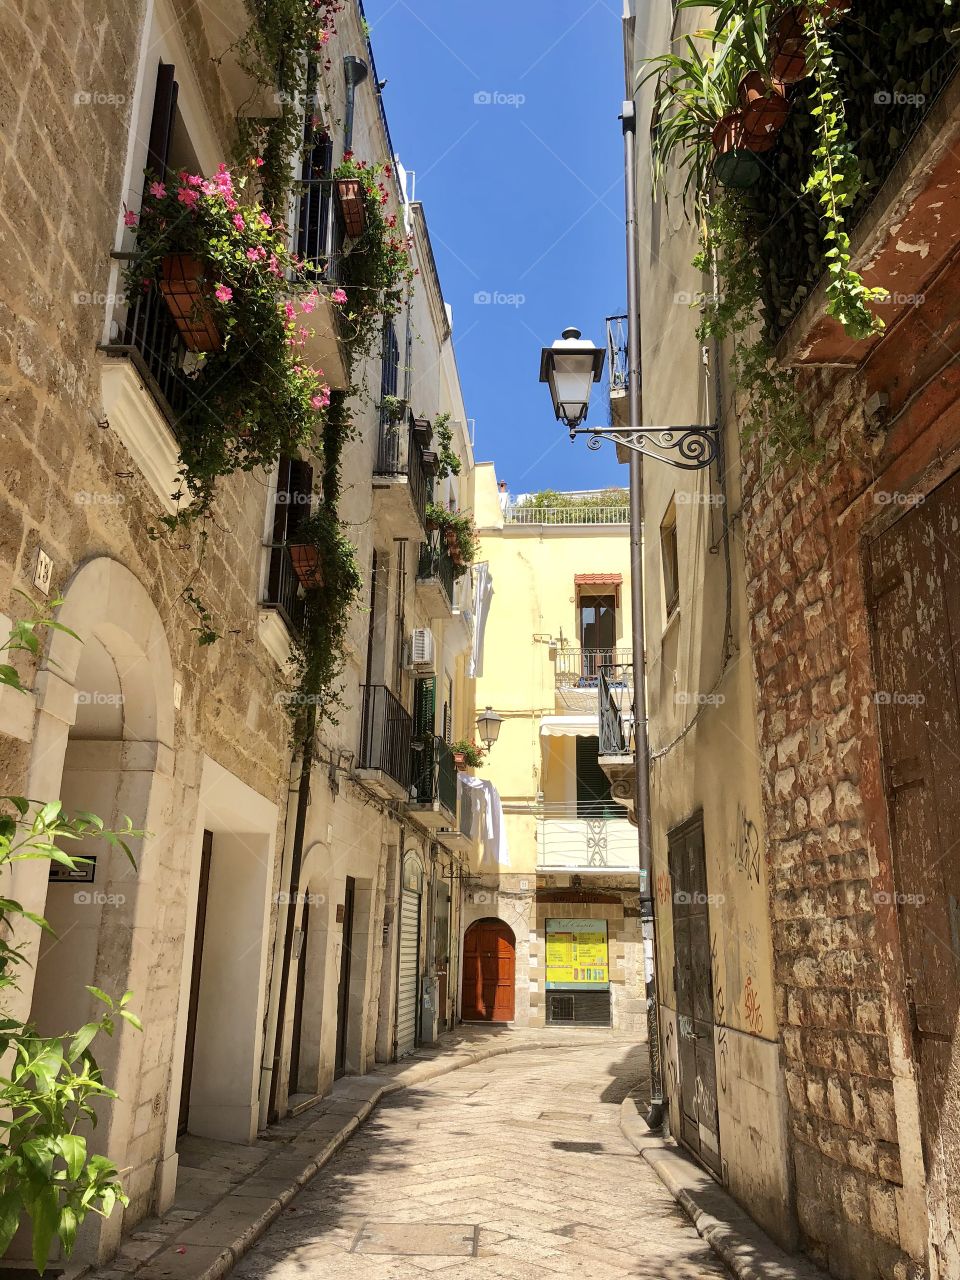 Picturesque street in Bari, Apulia,Italy